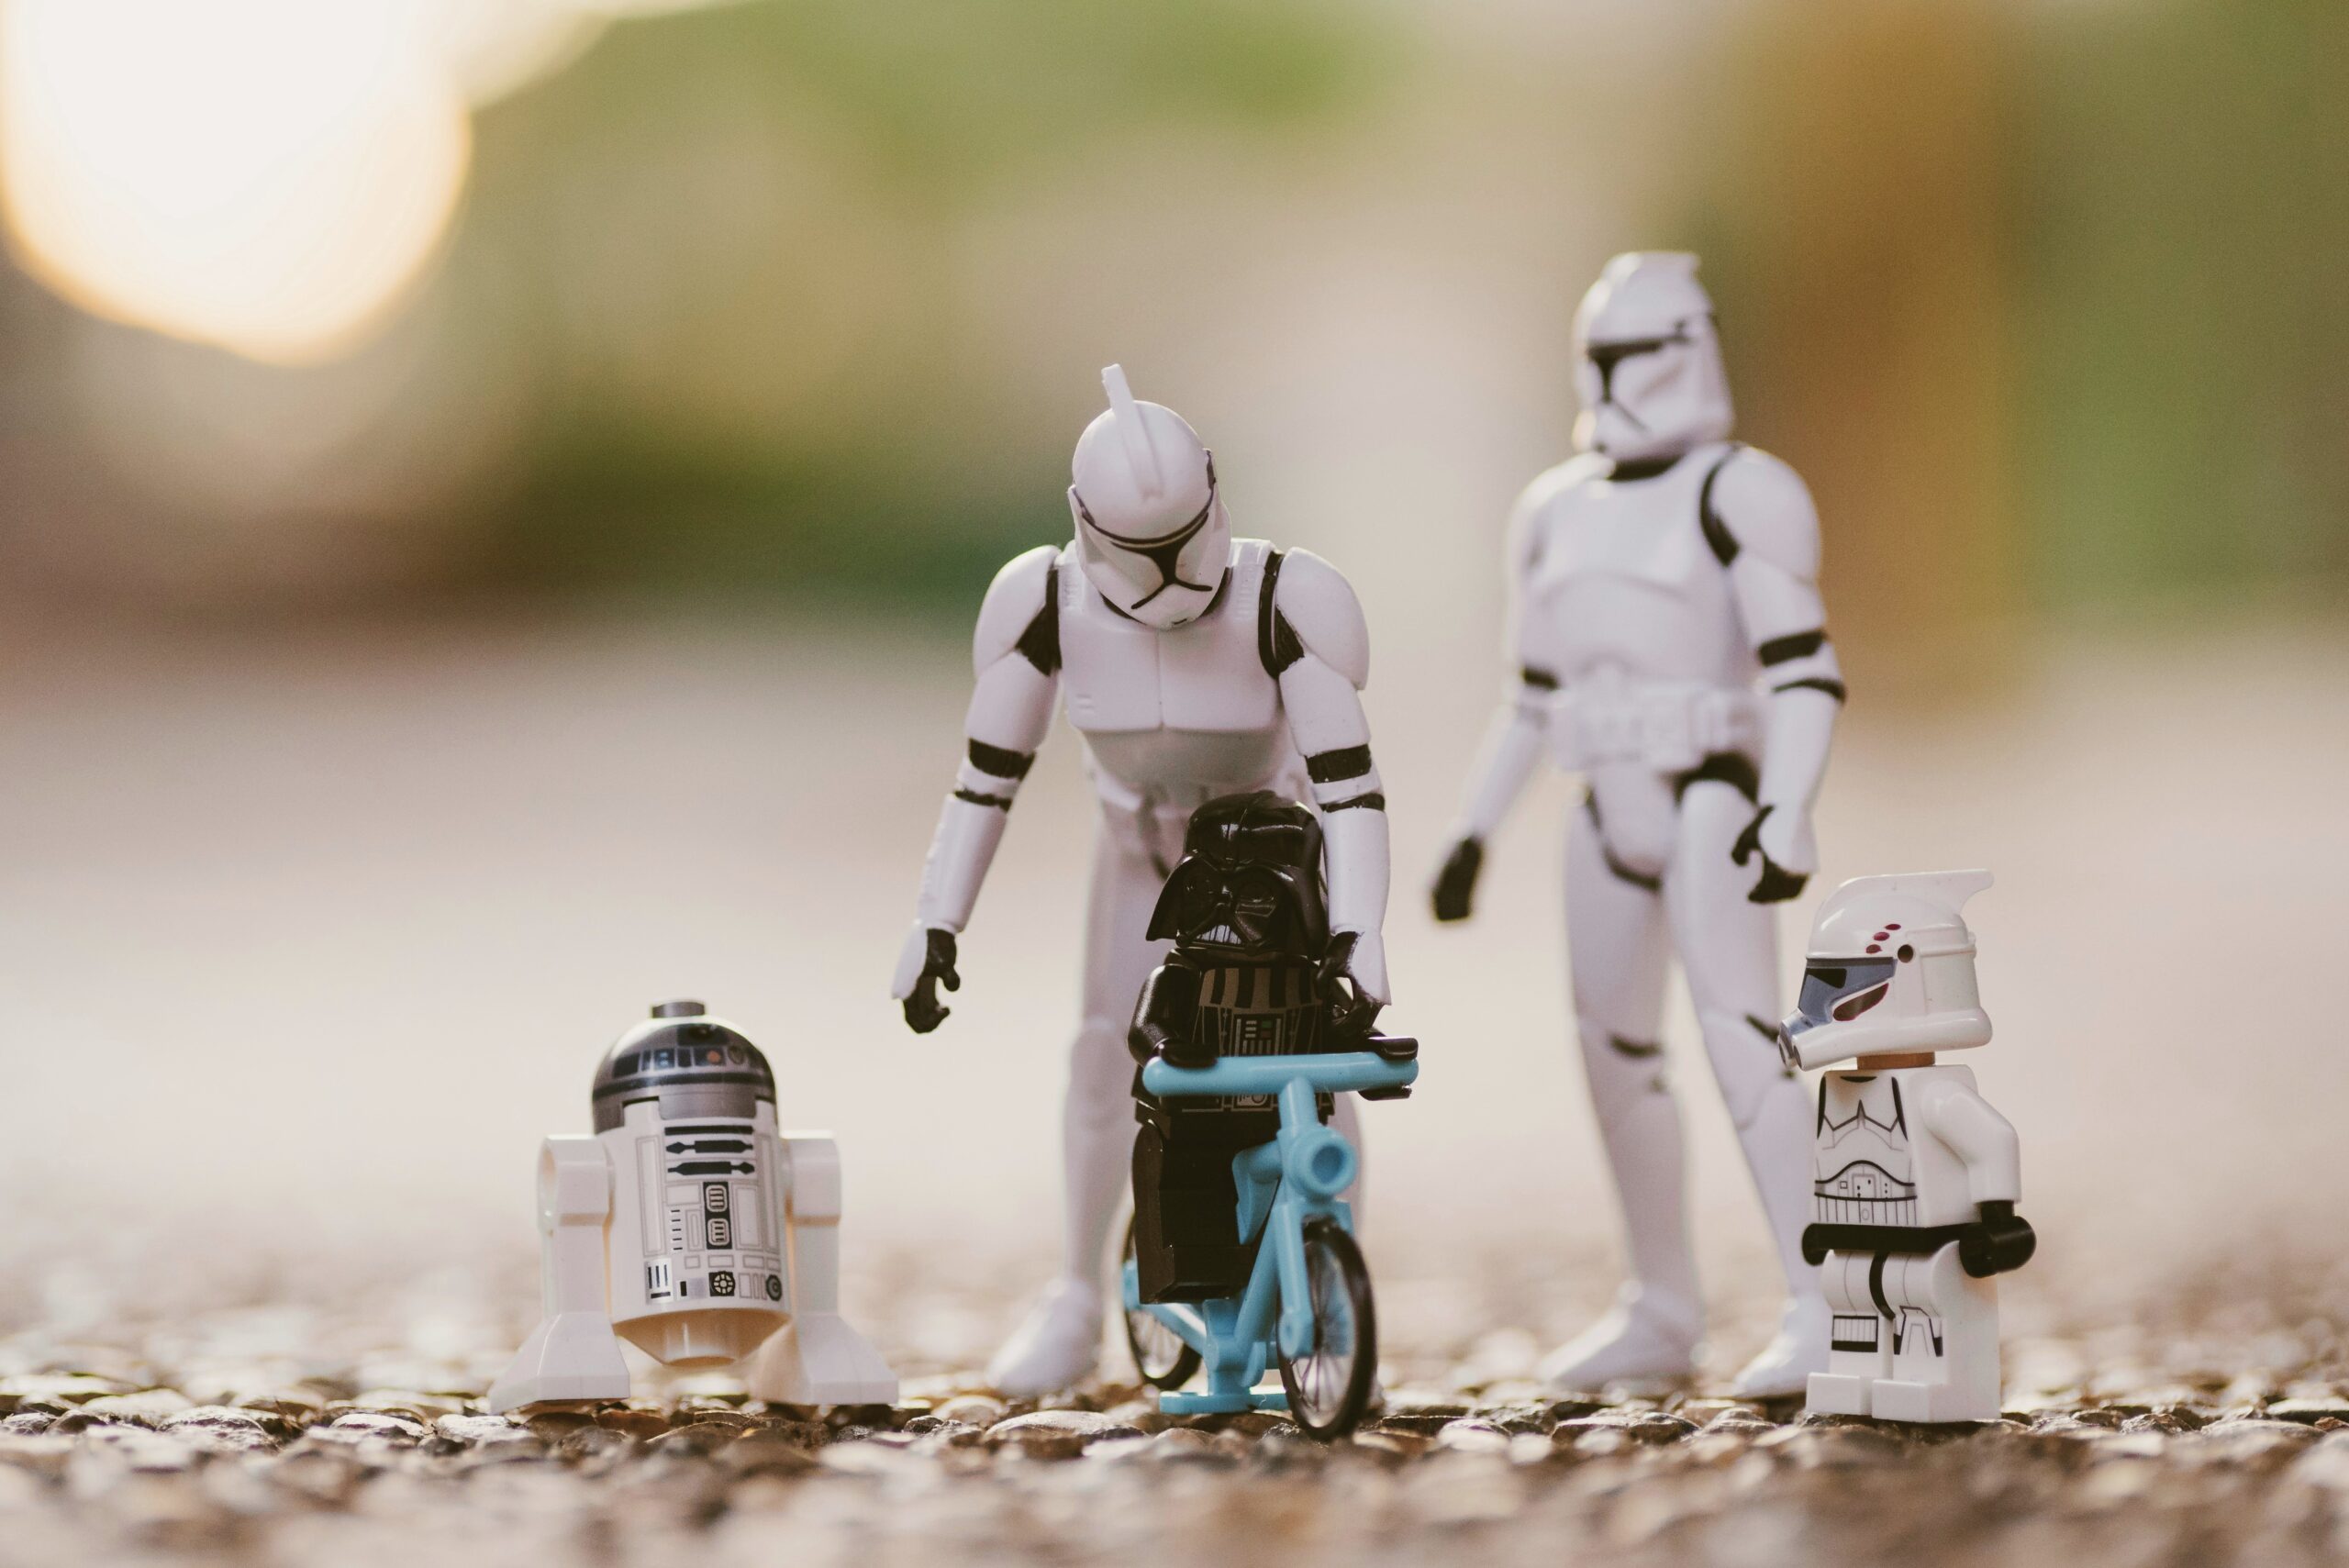 Spielzeugfiguren in Star Wars Manier symbolisieren eine Familie - Mythos gleichberechtigte Partnerschaft,